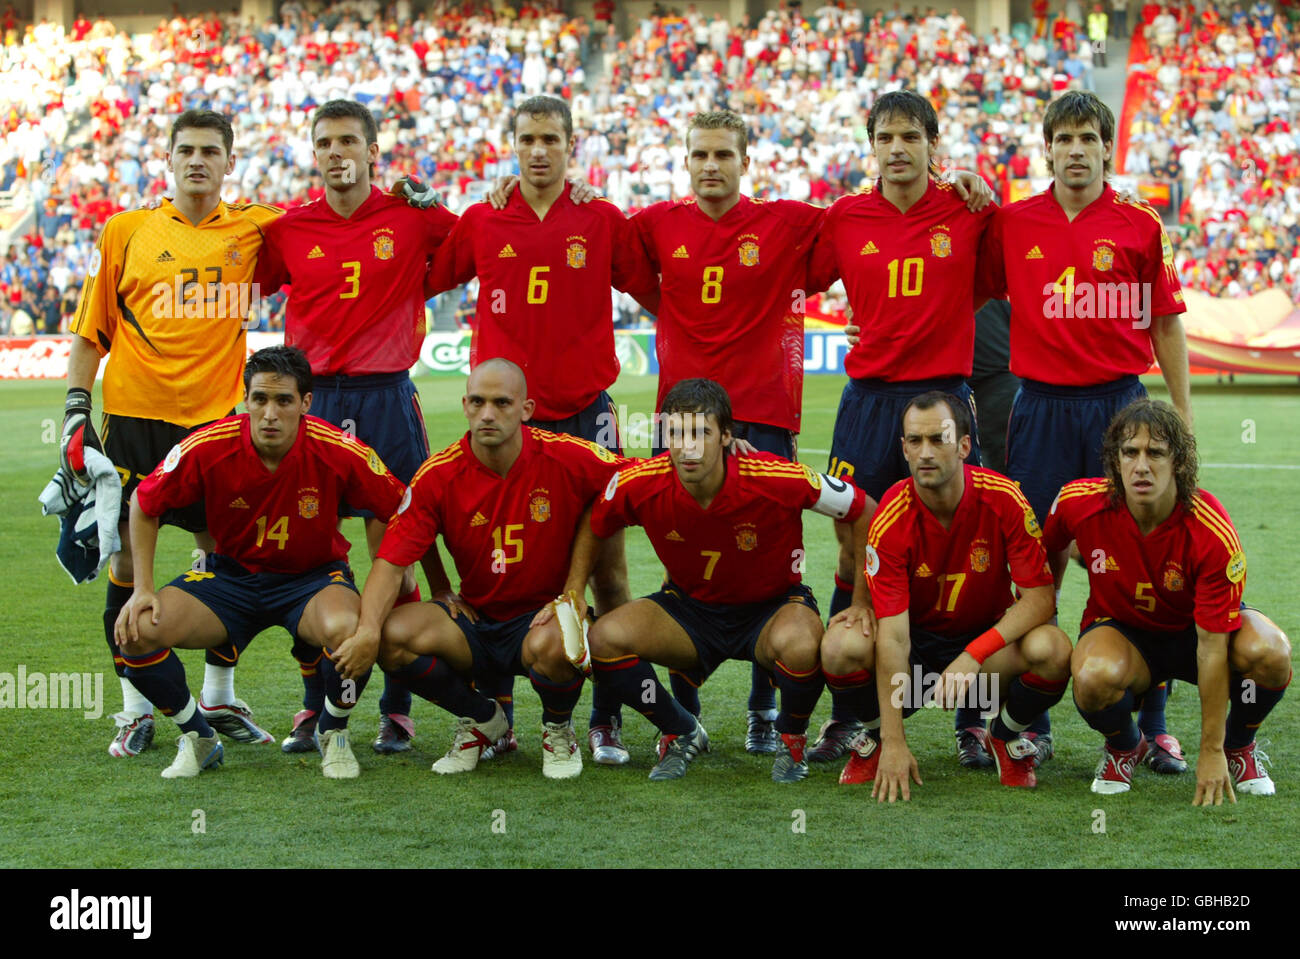 [Imagen: soccer-uefa-european-championship-2004-g...GBHB2D.jpg]